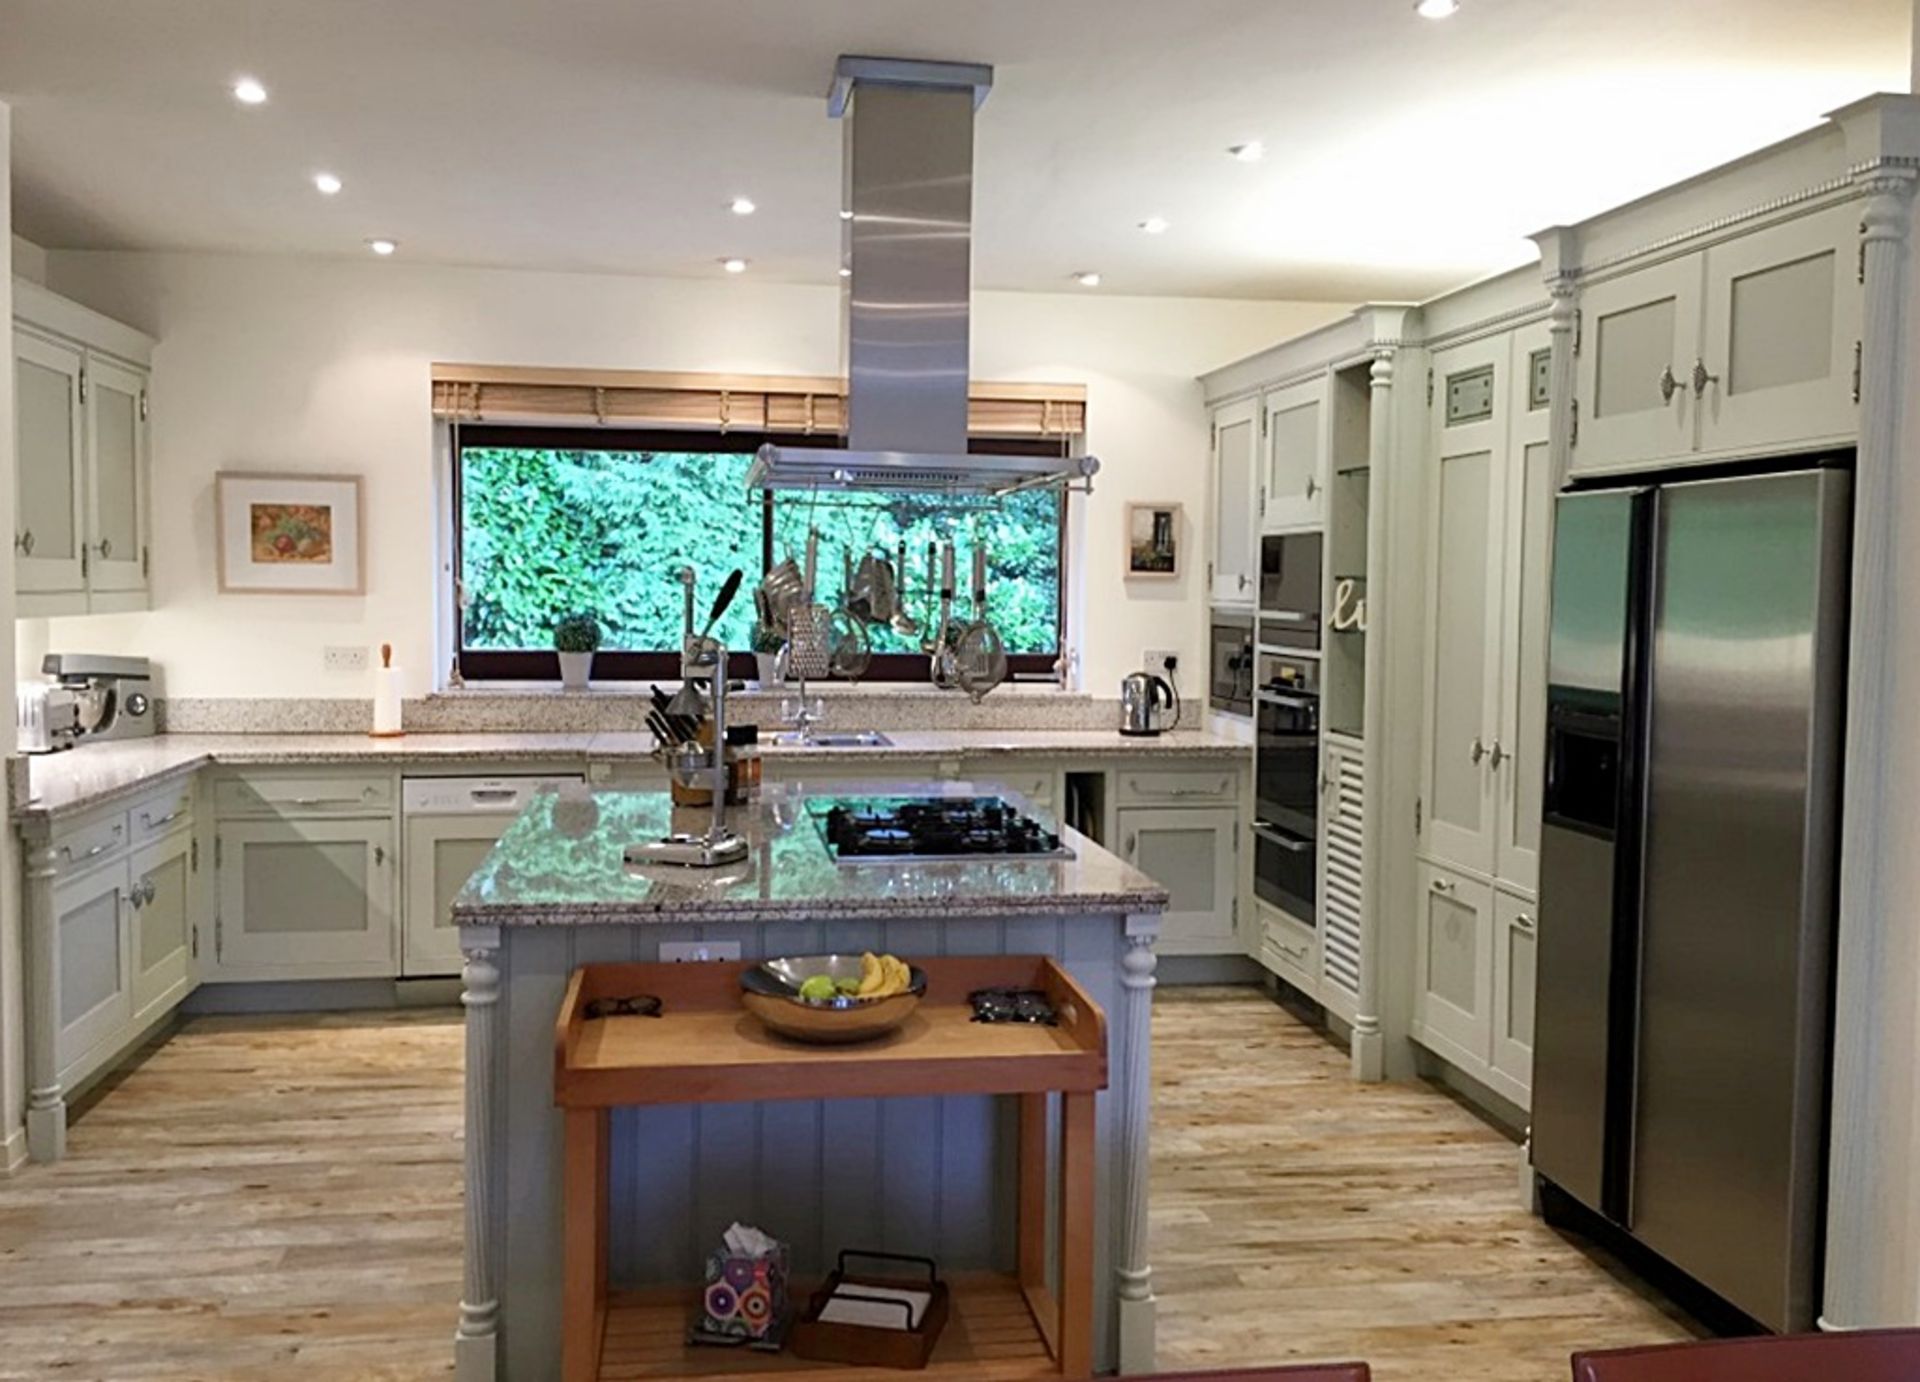 1 x Mark Wilkinson Designer kitchen With Miele Appliances & Granite Worksurfaces - No VAT